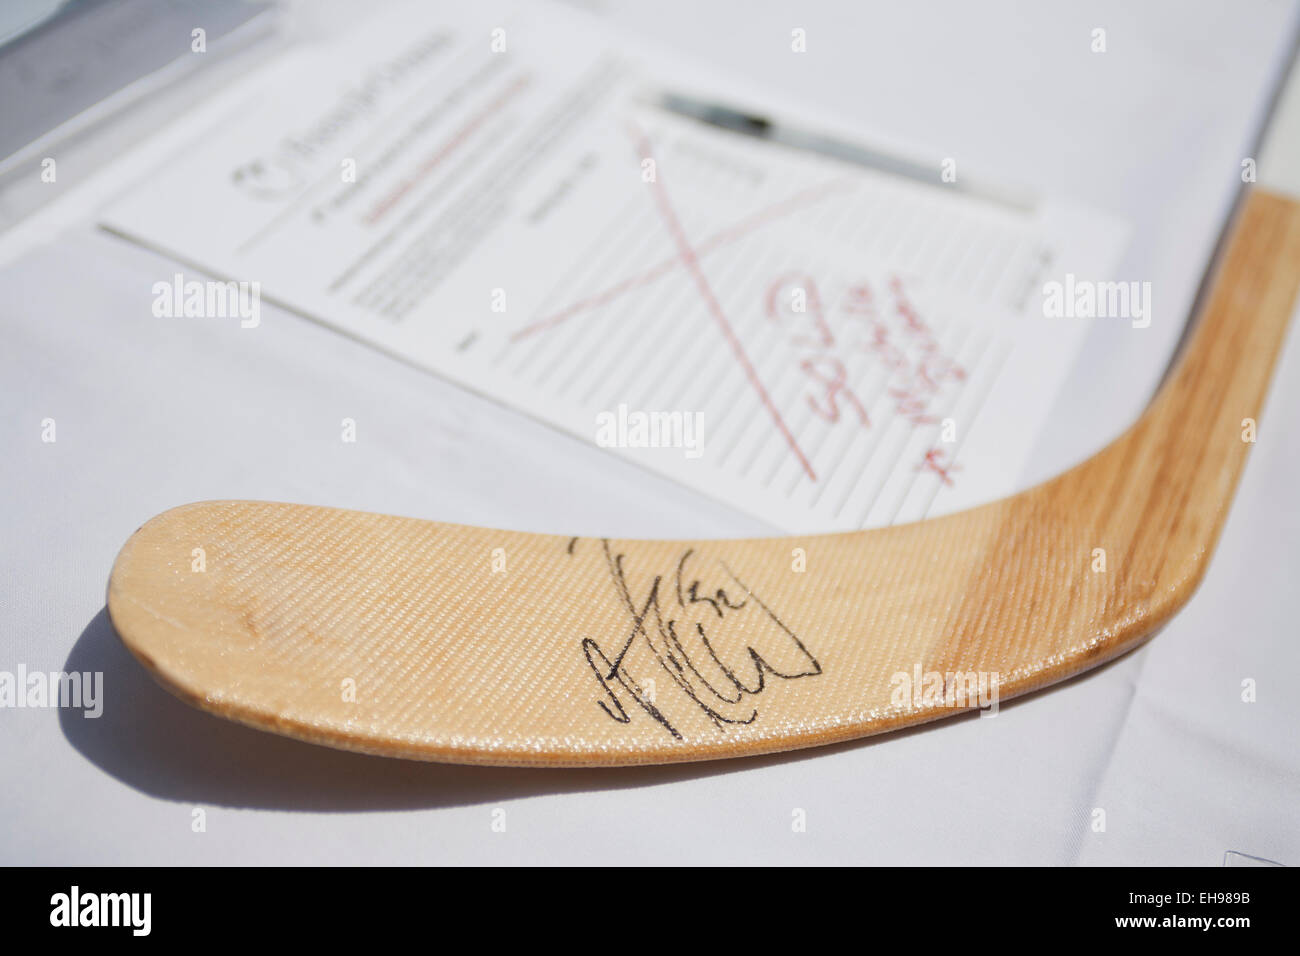 Joueur de hockey professionnel signé stick que l'événement de levée de fonds - USA Banque D'Images